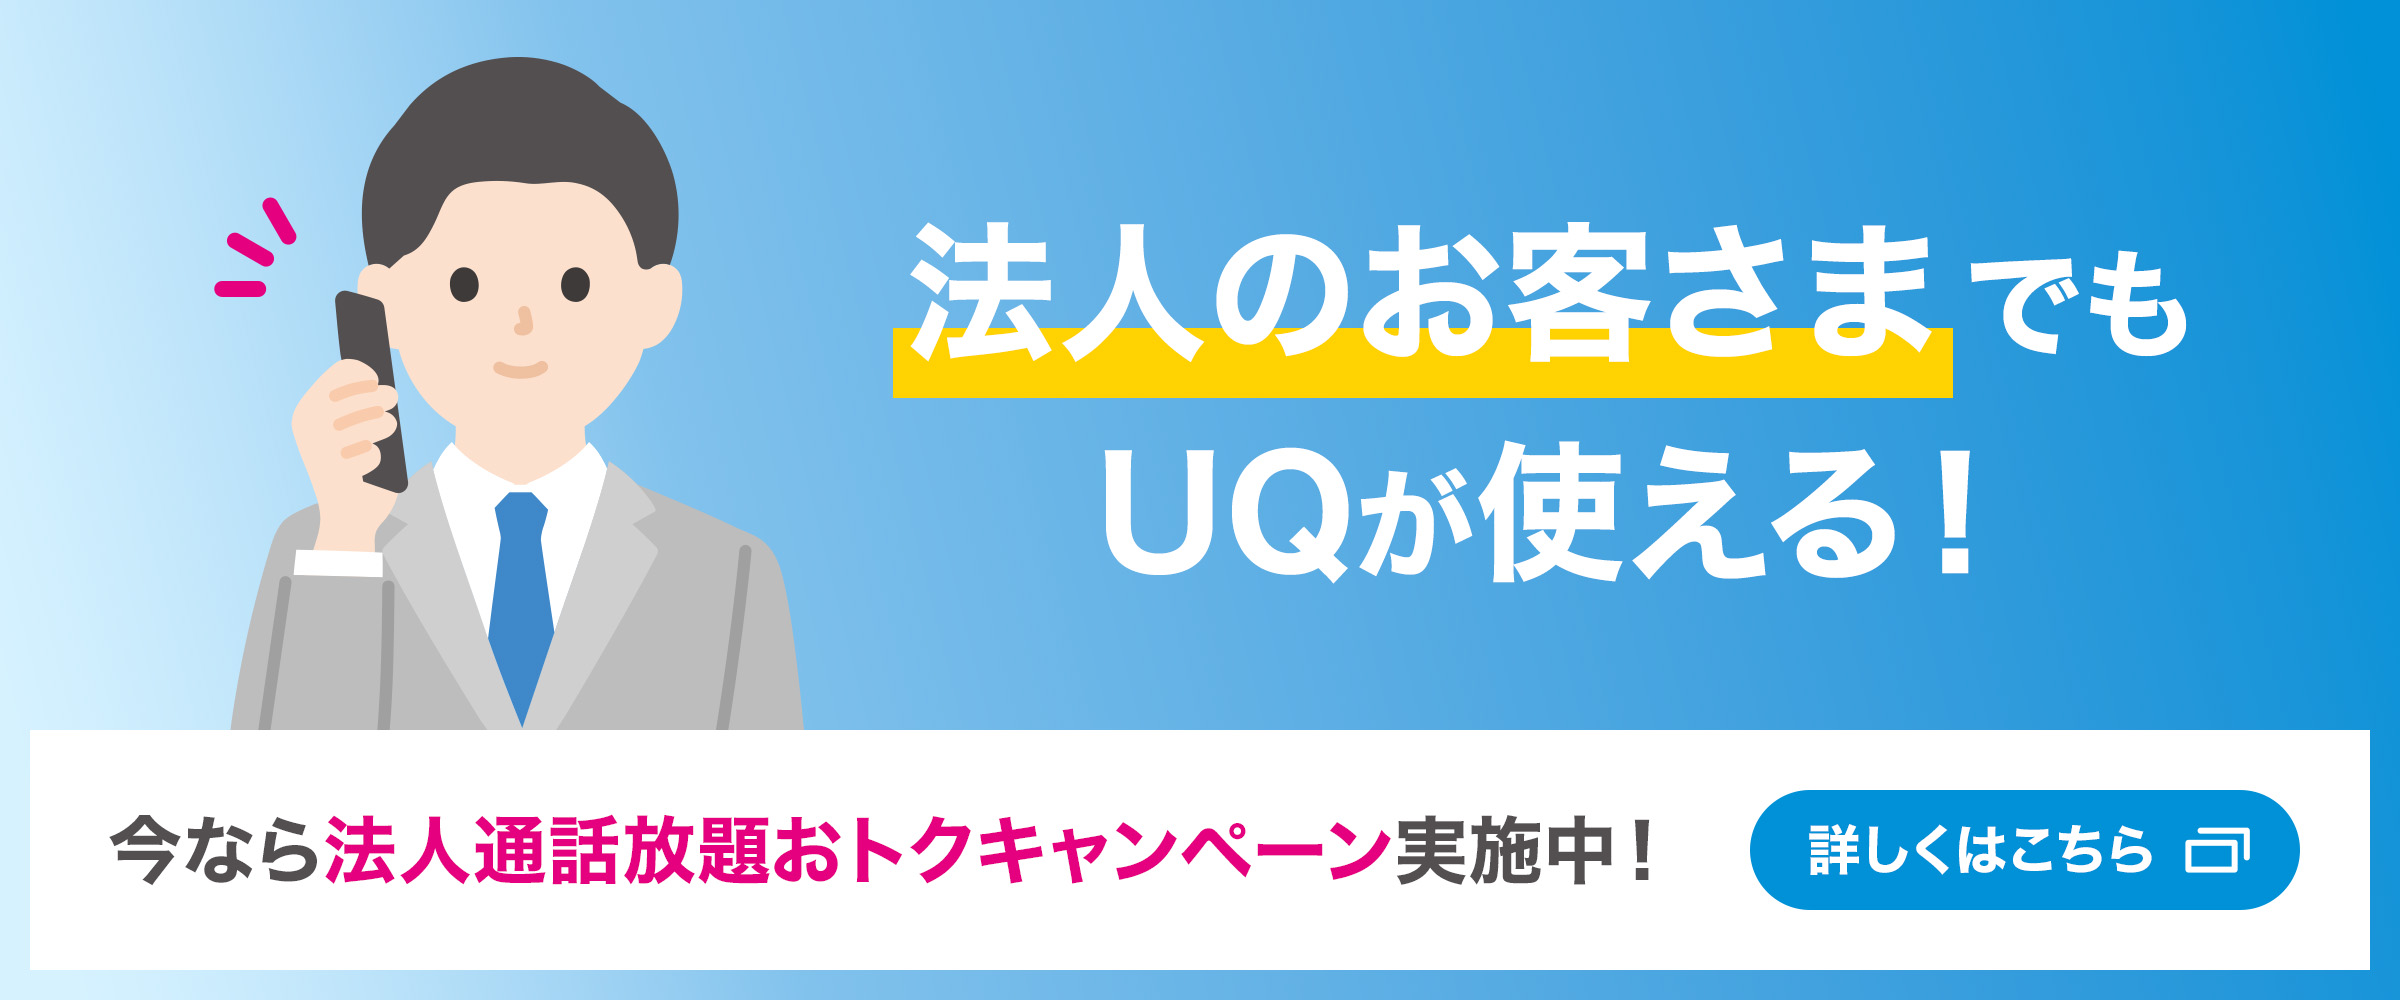 UQ キャンペーン